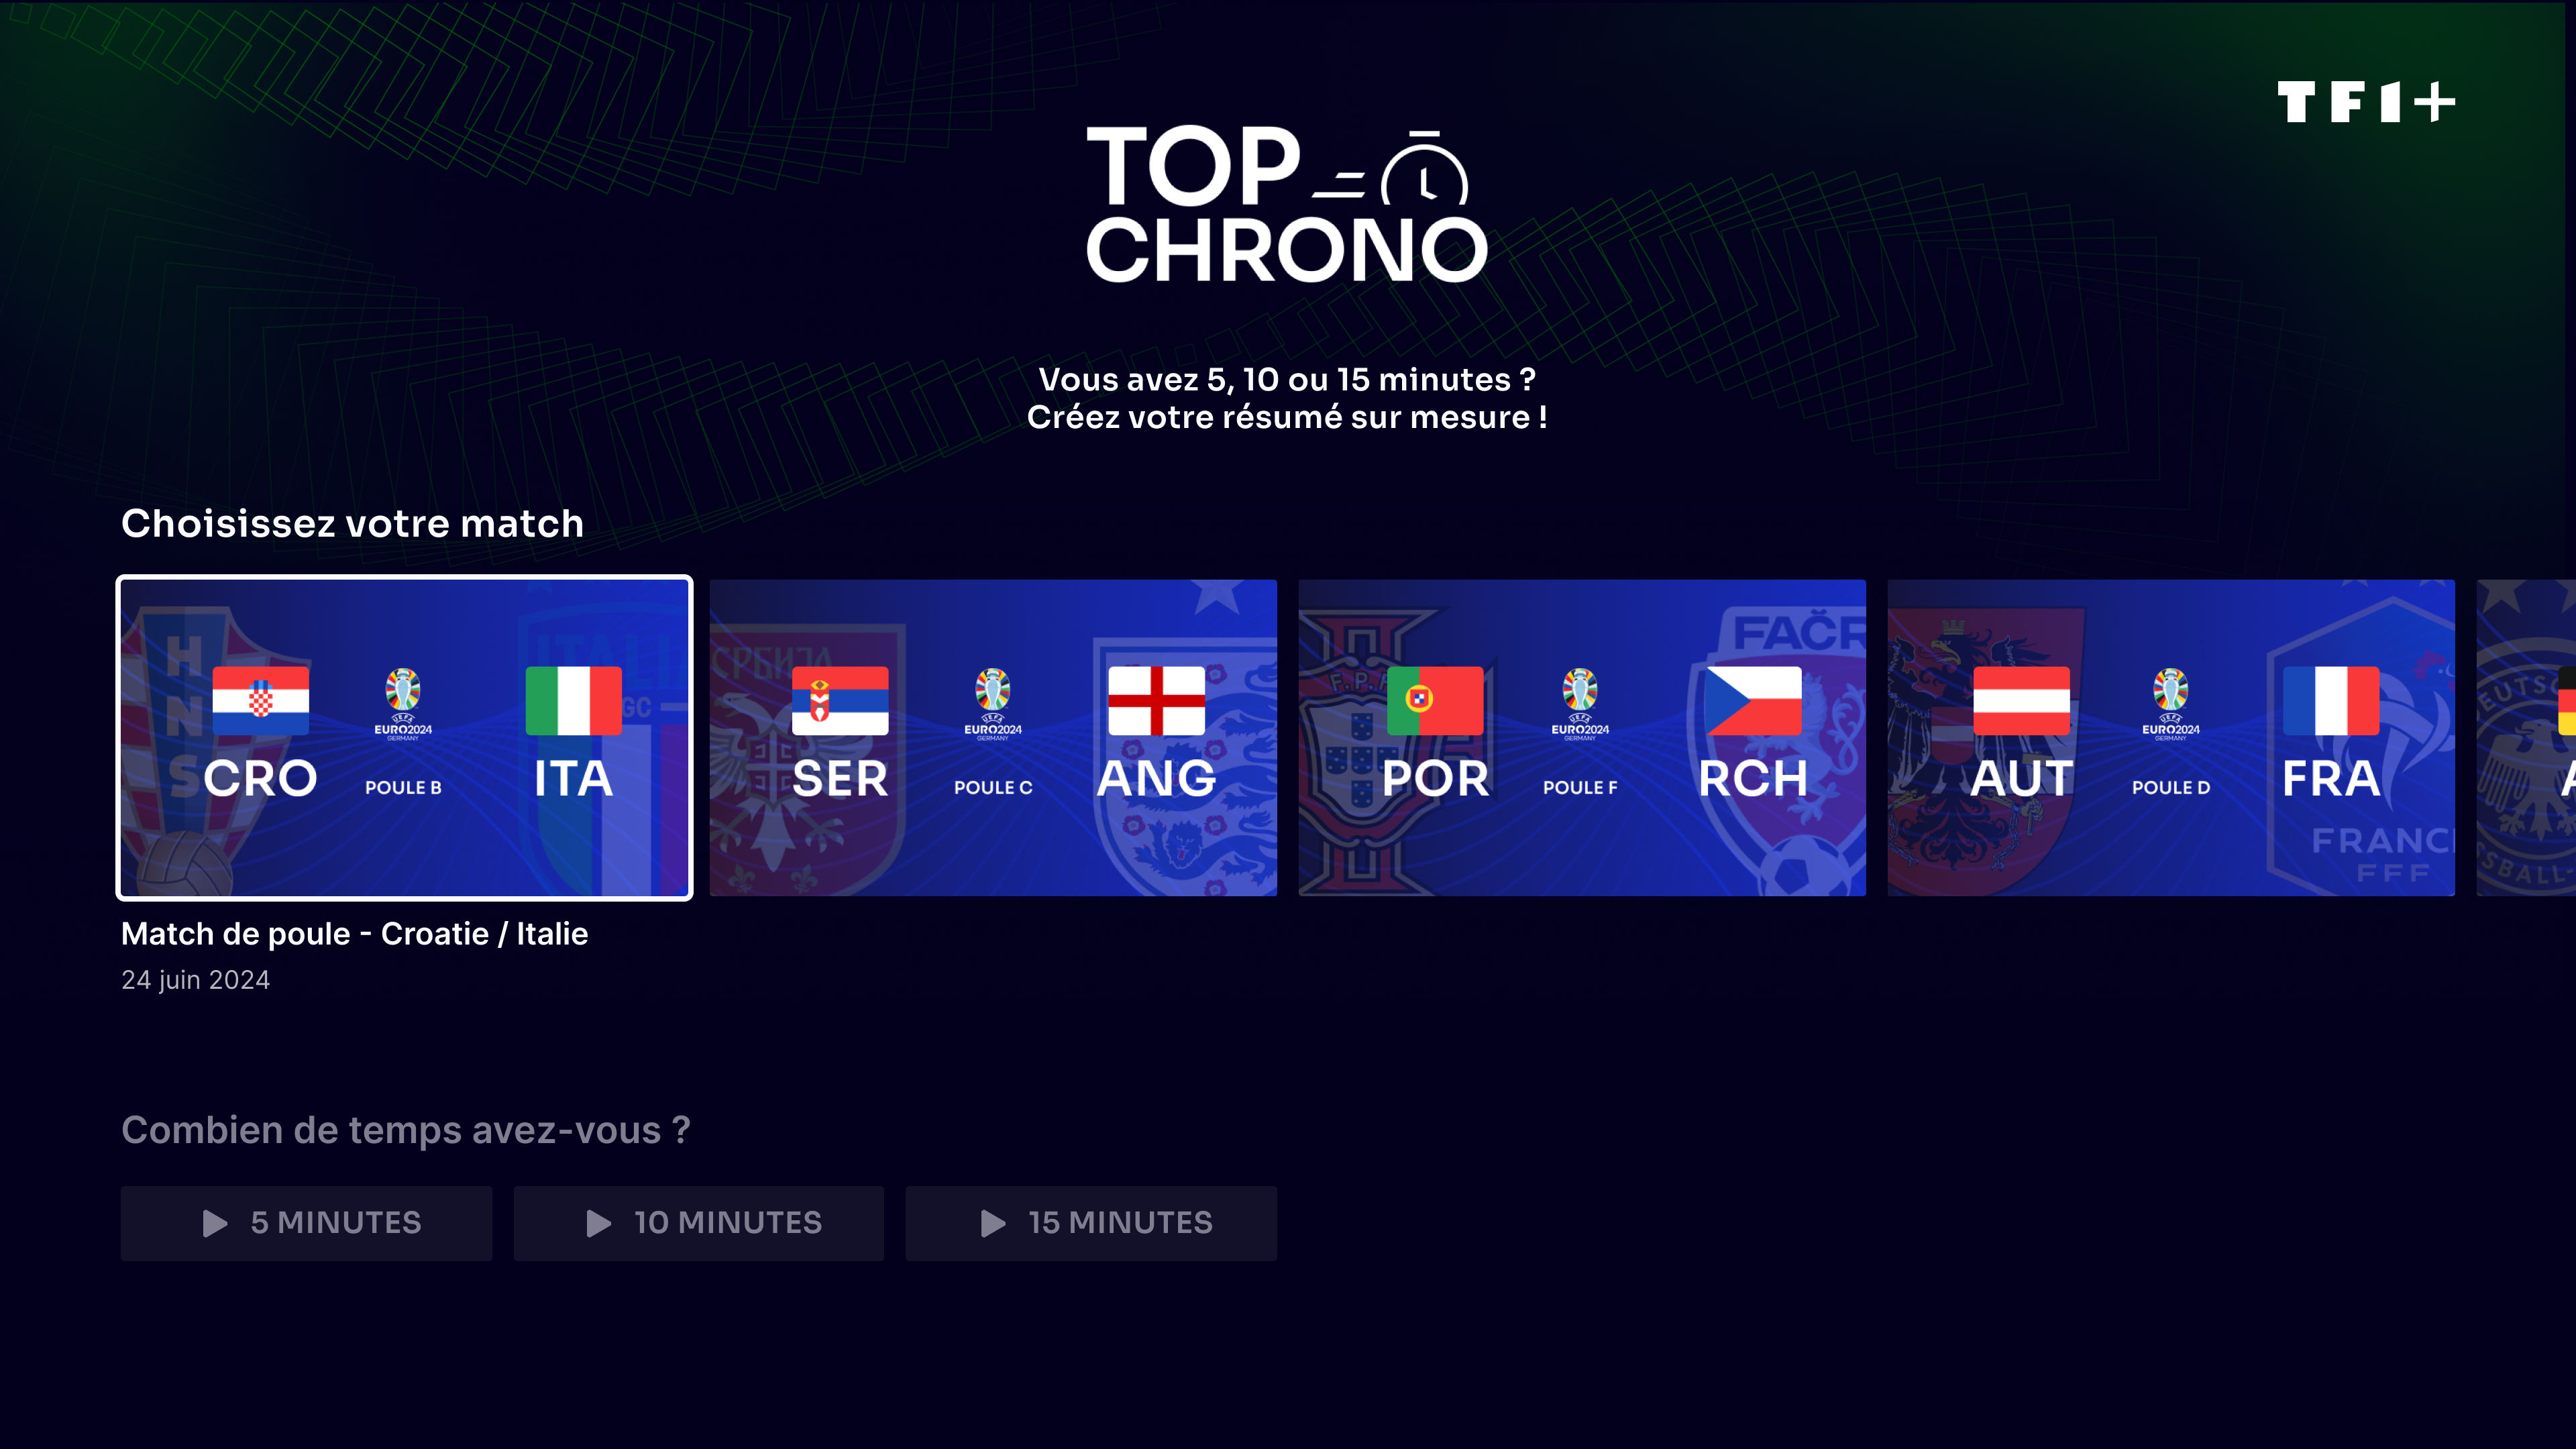 Top Chrono sur TF1+ - choisissez votre match